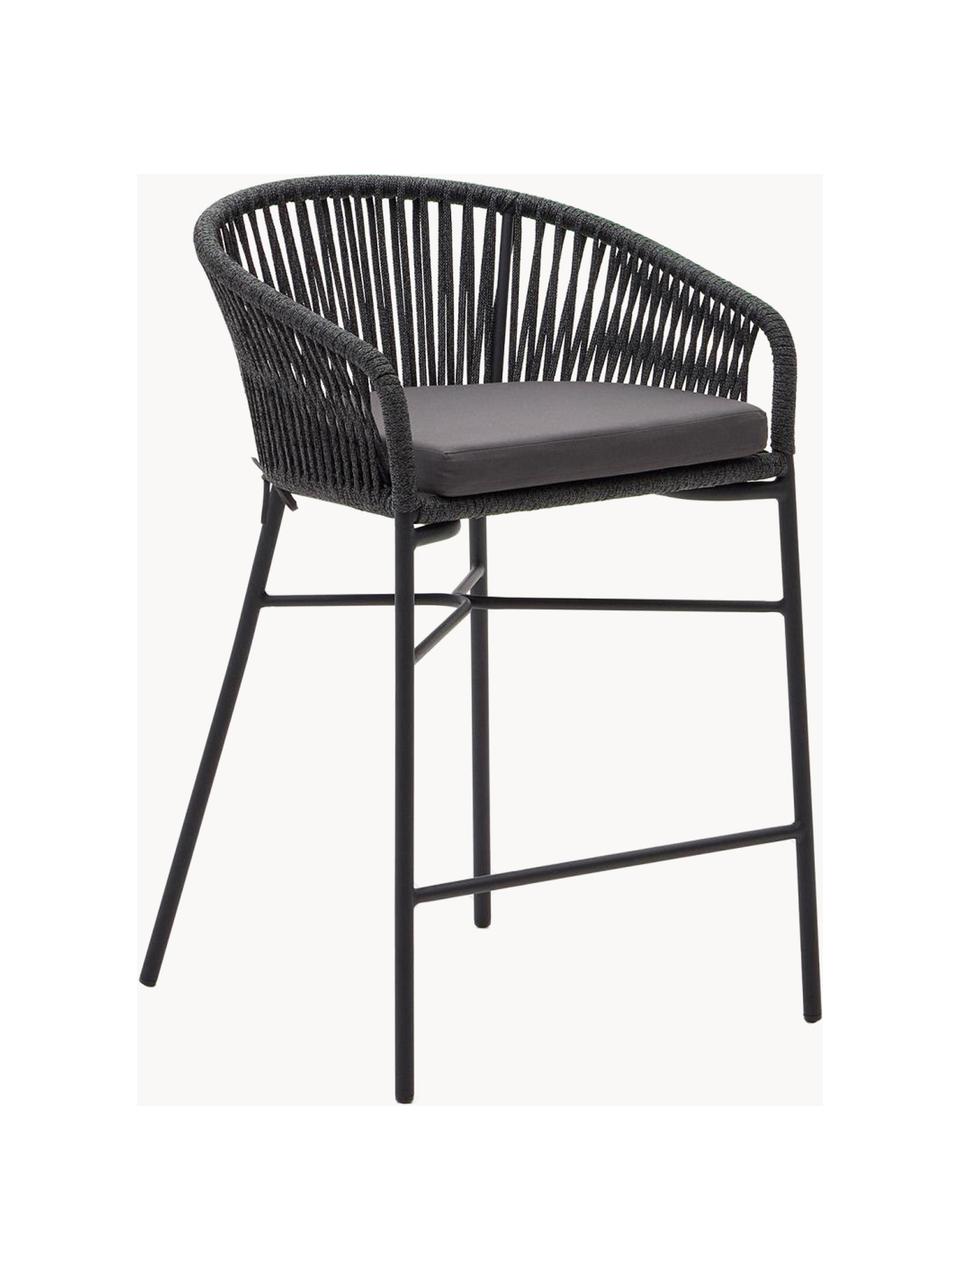 Yuinbarstoelen Yanet, 2 stuks, Bekleding: 100% polyester, Frame: gegalvaniseerd metaal, Geweven stof donkergrijs, zwart, B 55 x H 85 cm